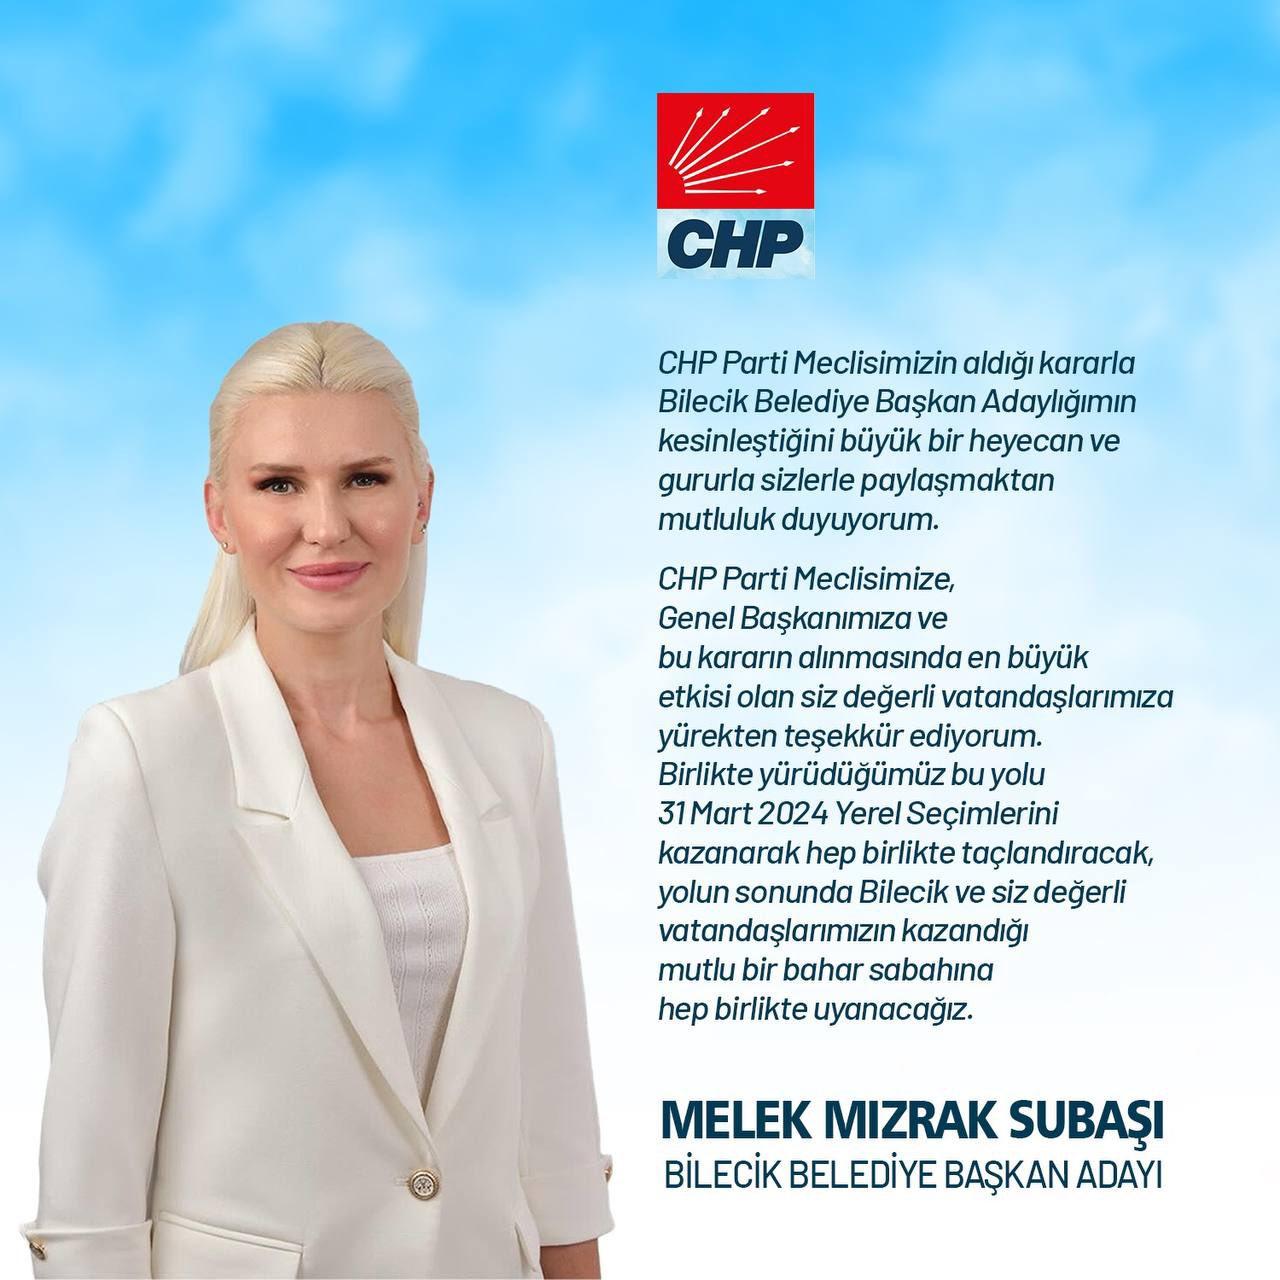 Melek Mızrak Subaşı on X: "CHP Parti Meclisimizin aldığı kararla Bilecik Belediye Başkan Adaylığımın kesinleştiğini büyük bir heyecan ve gururla sizlerle paylaşmaktan mutluluk duyuyorum. CHP Parti Meclisimize, Genel Başkanımıza ve bu kararın